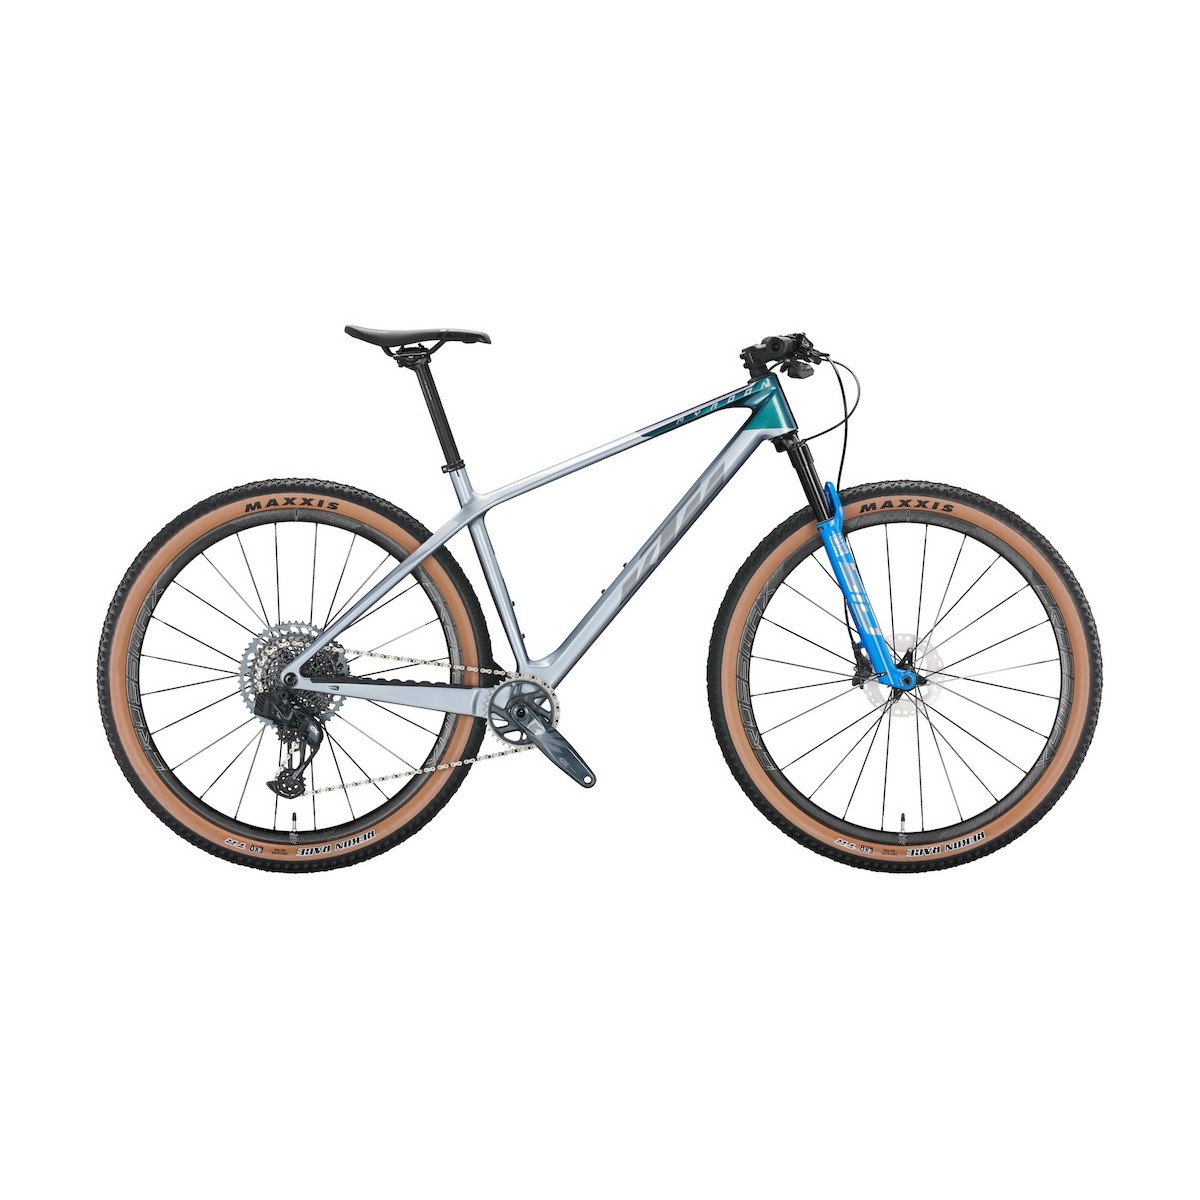 KTM MYROON PRIME kalnu velosipēds - sudraba/zila - 2022